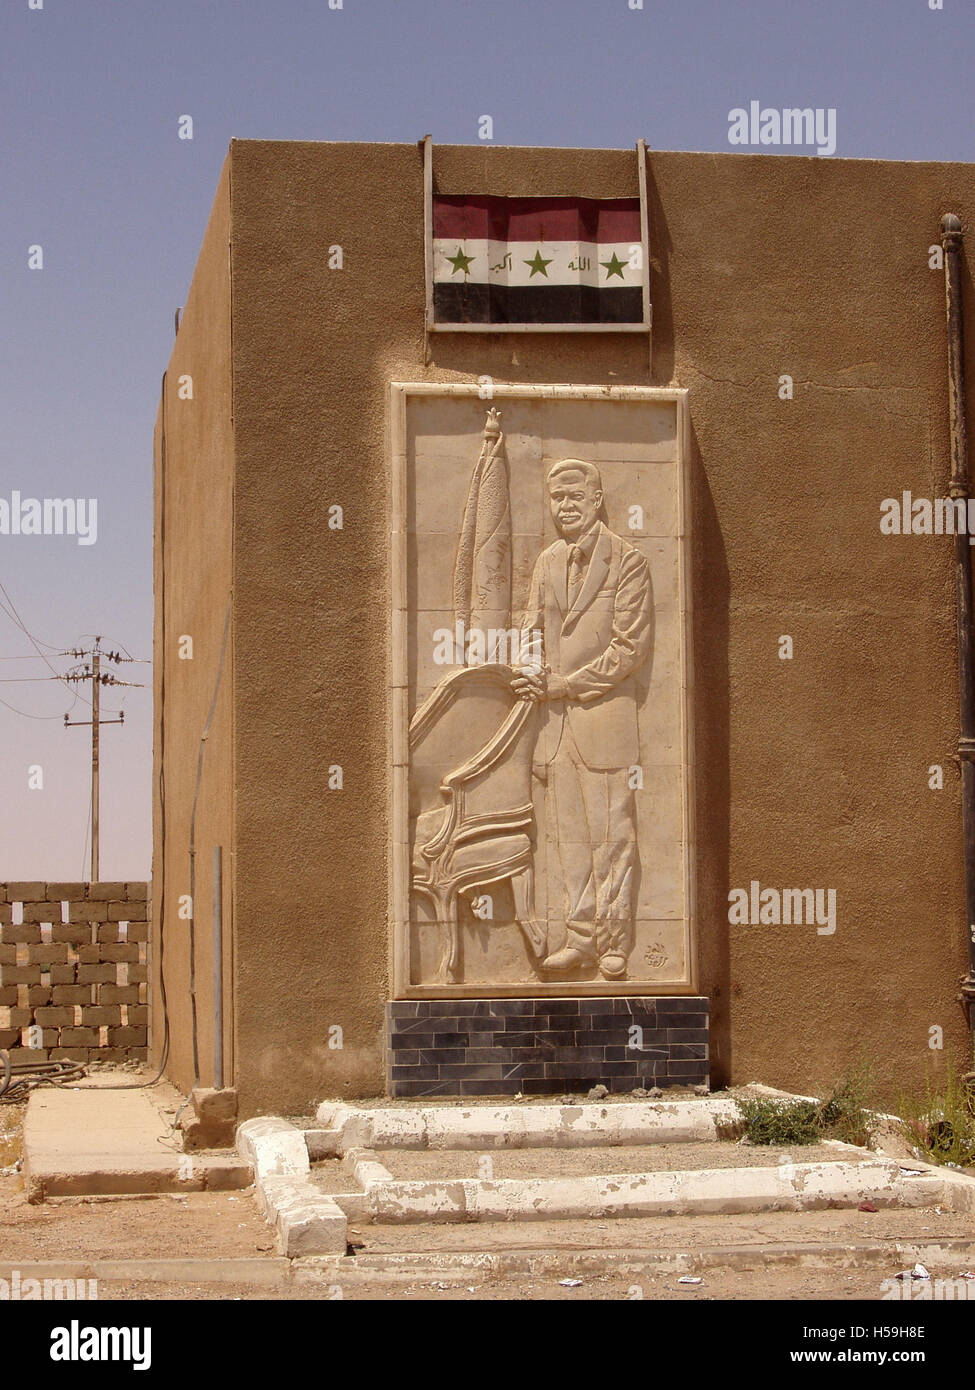 26 juillet 2003 un portrait de Saddam Hussein au point de contrôle frontalier avec la Jordanie, à Trebil, juste à l'intérieur de l'Irak. Banque D'Images